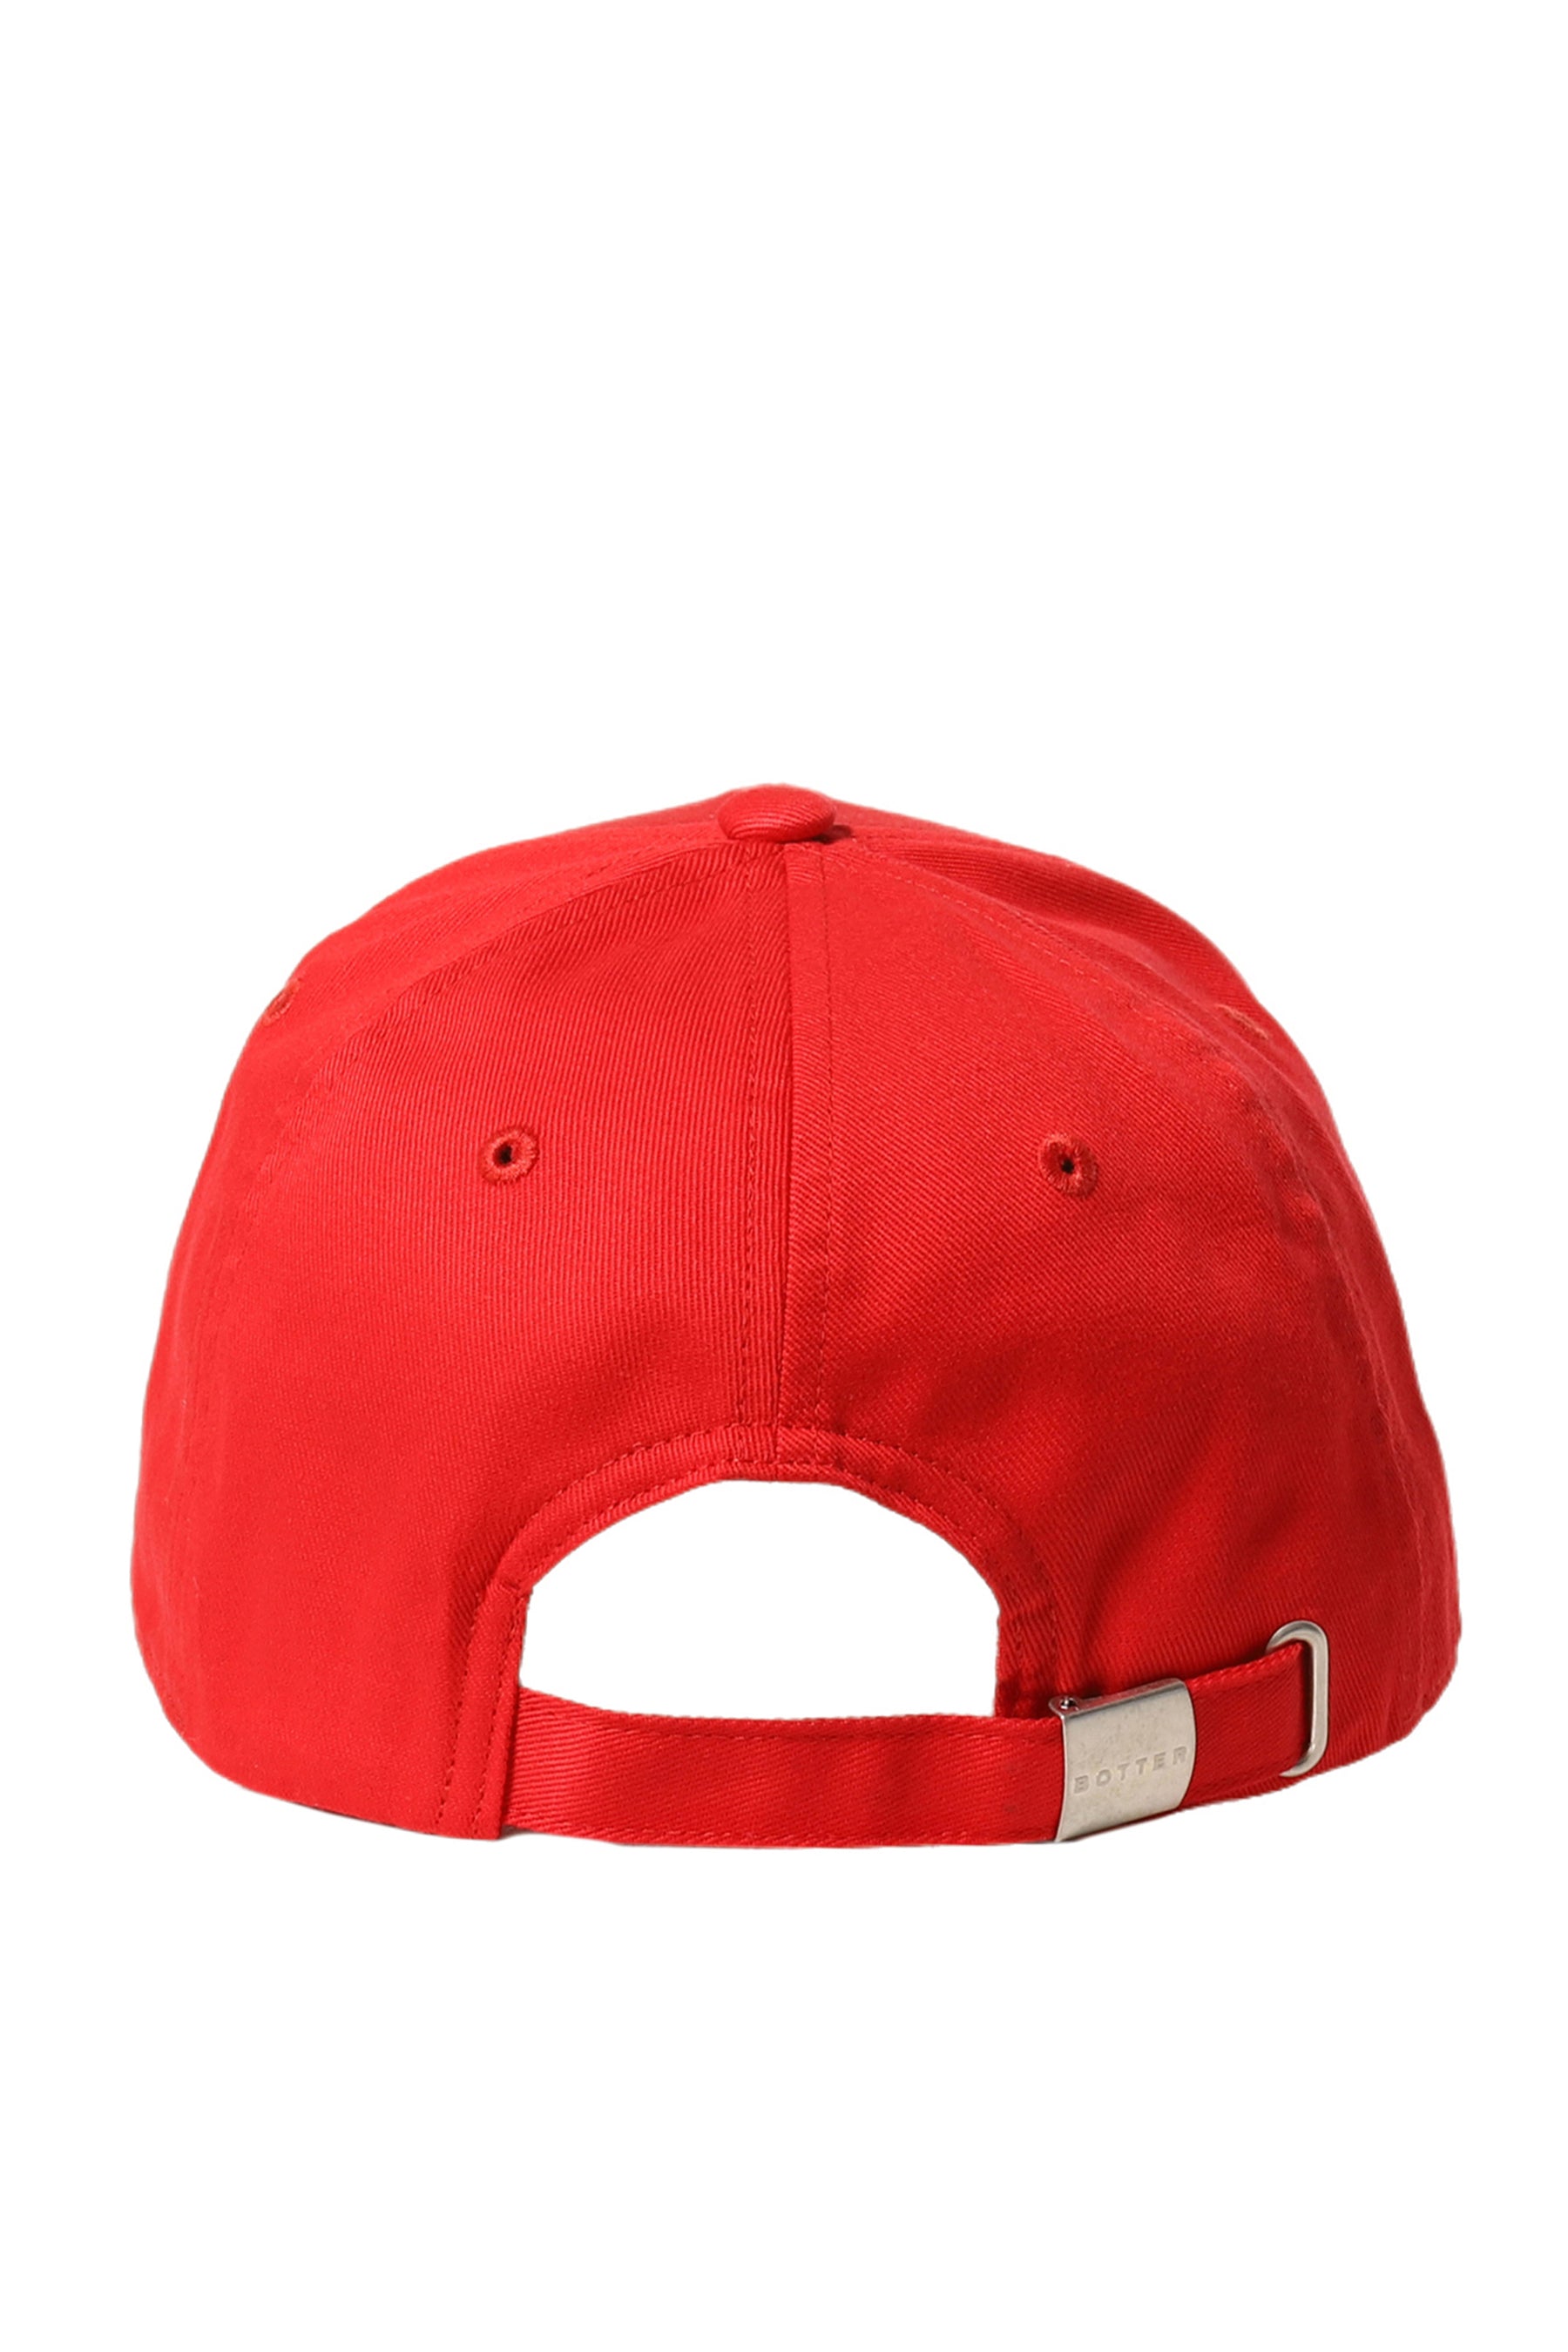 CLASSIC CAP / RED